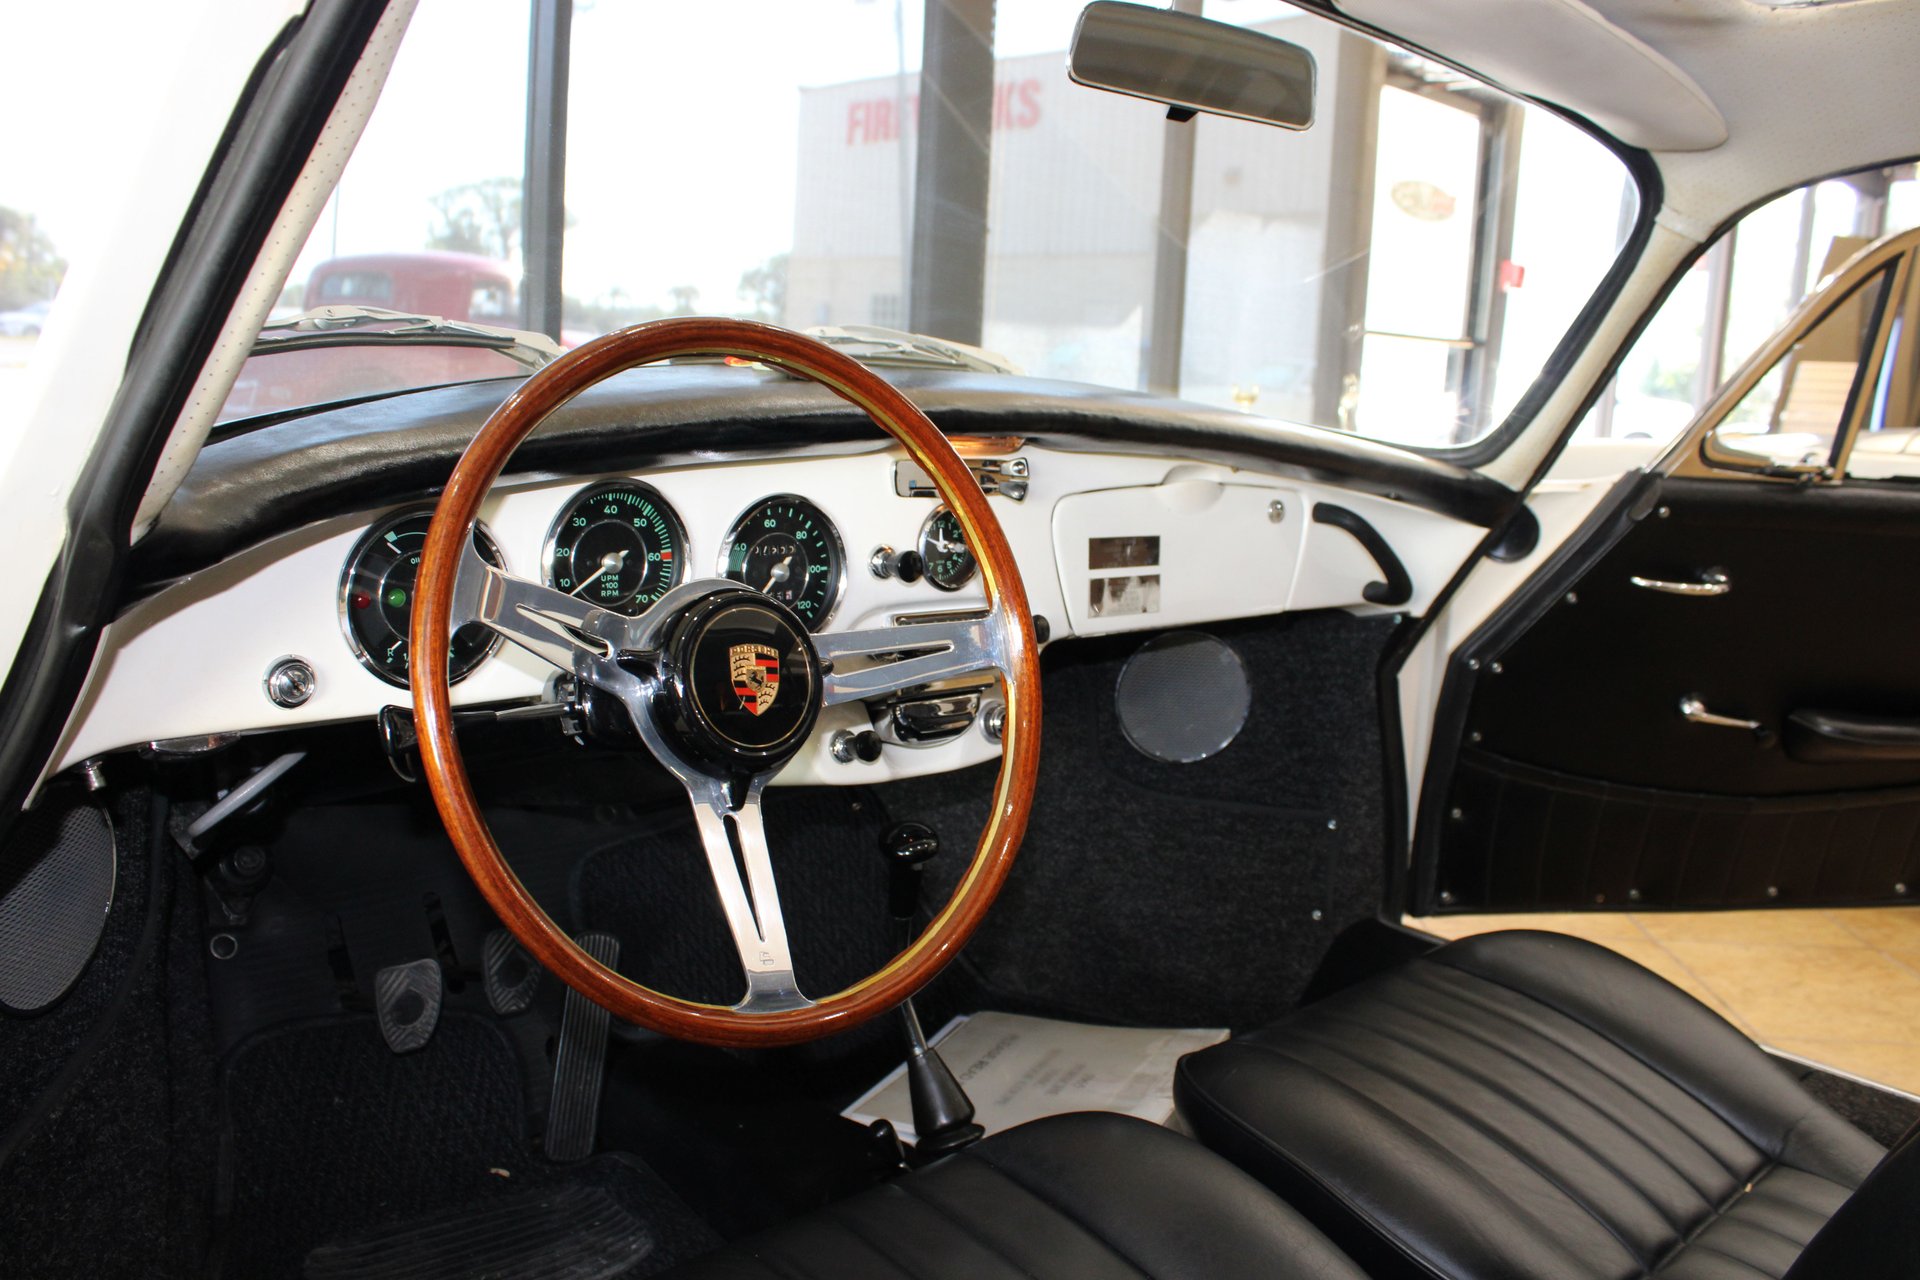 For Sale 1965 Porsche 356